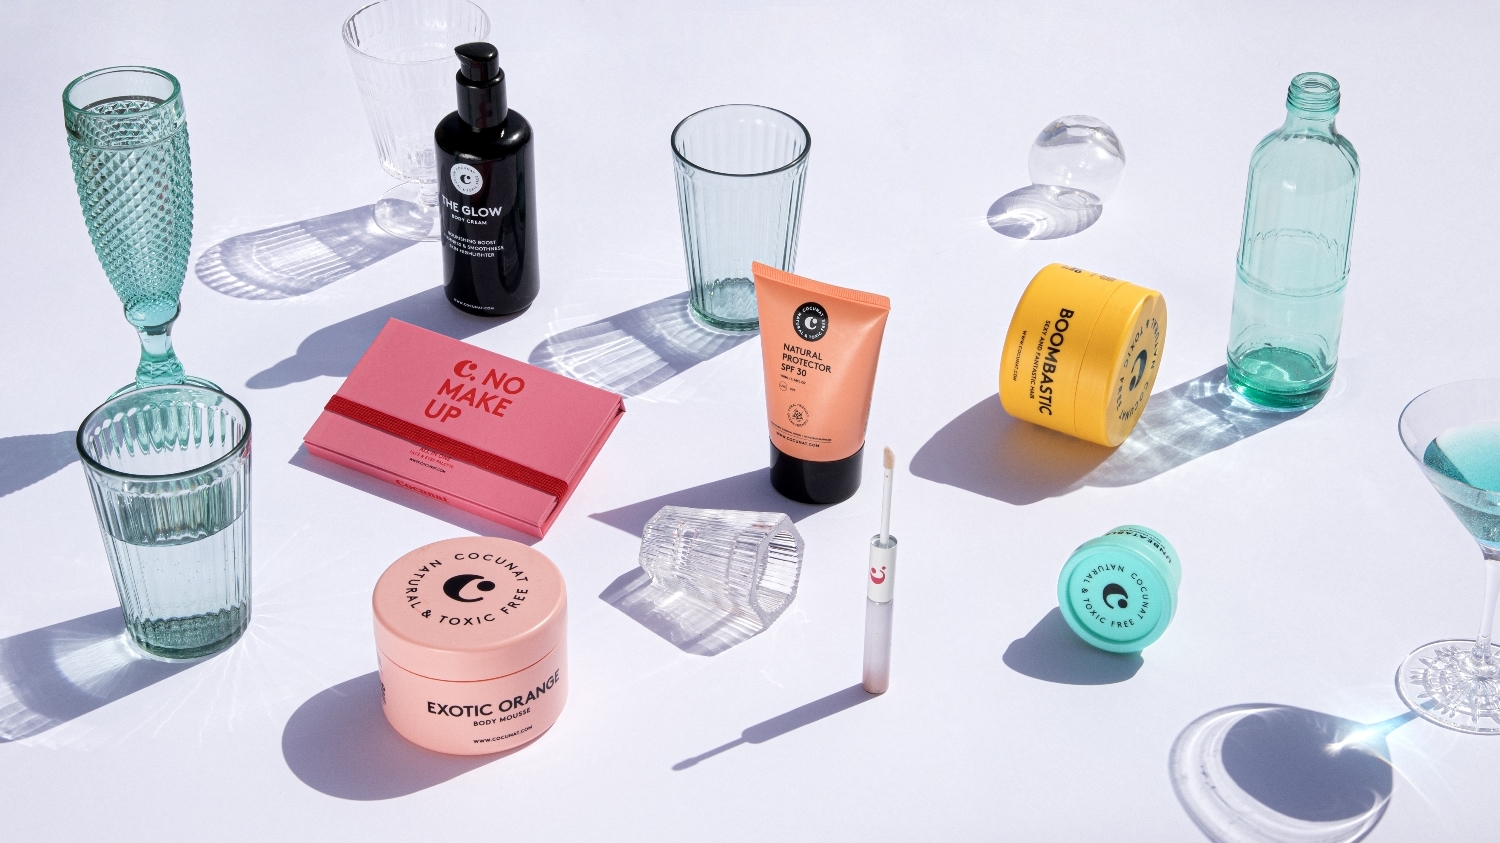 Los cosméticos de Cocunat responden a las necesidades de sus clientas y es una firma de cosmética nativa digital y toxic free.